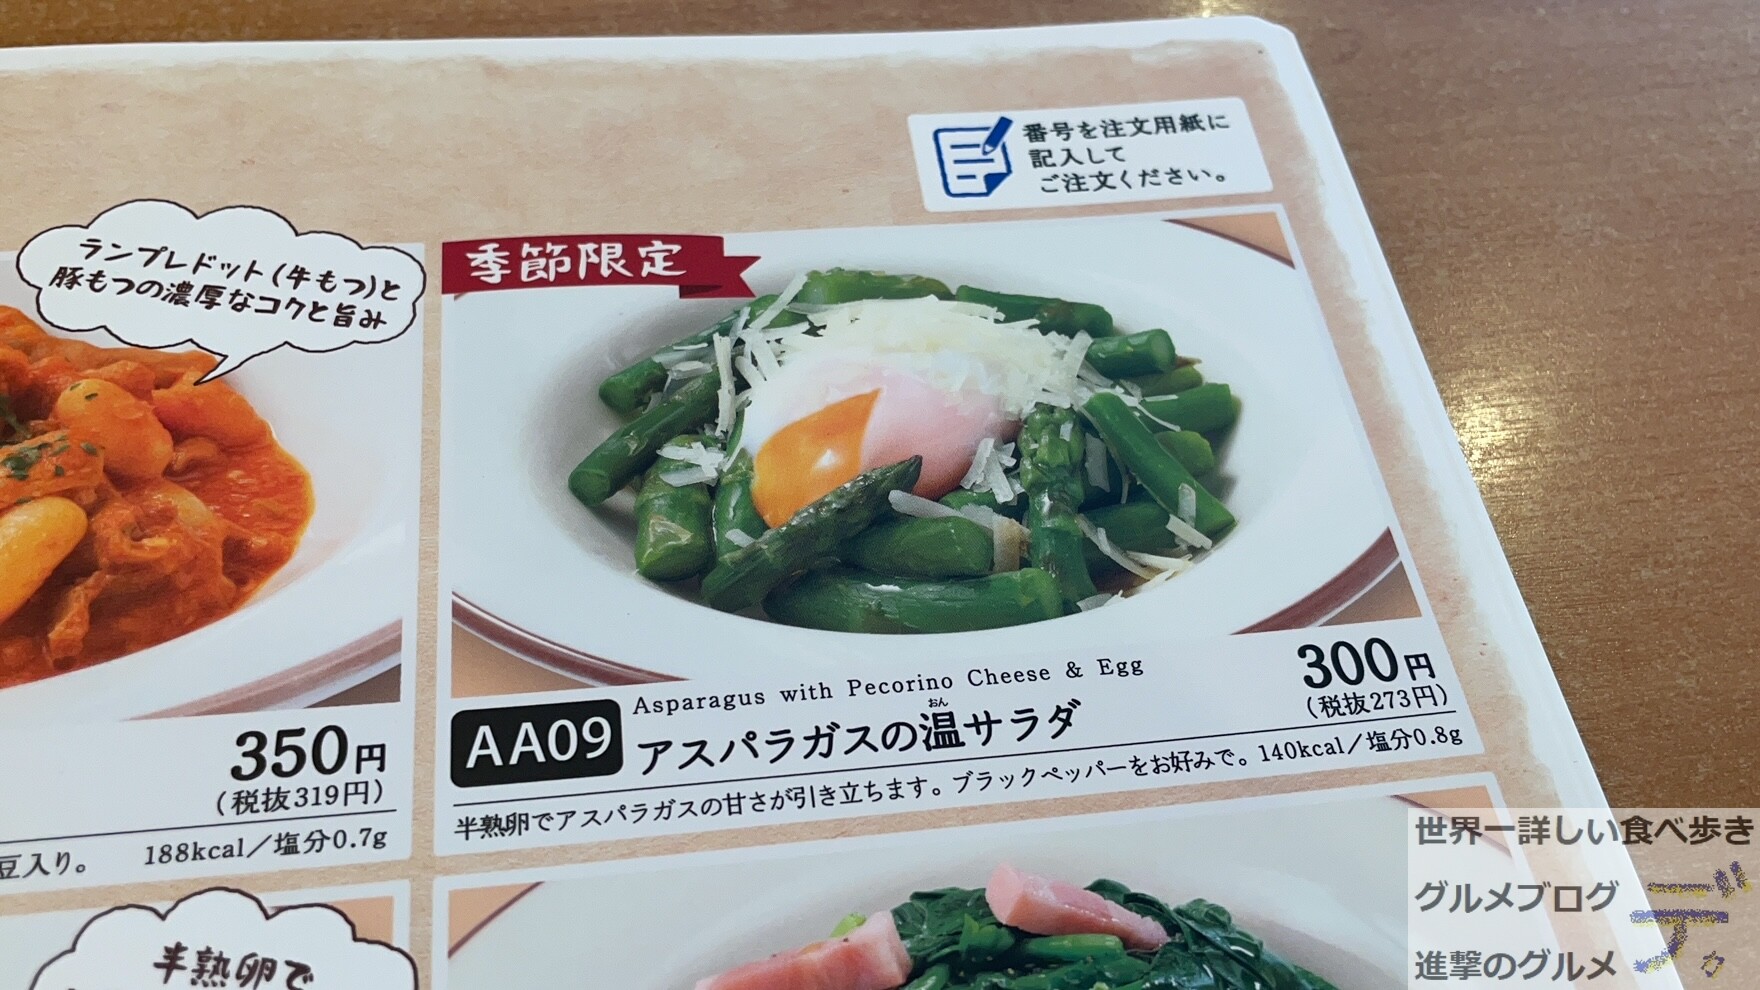 アスパラガスの温サラダ サイゼリヤで おいしく 野菜を摂る 進撃のグルメ Yahoo Japan クリエイターズプログラム